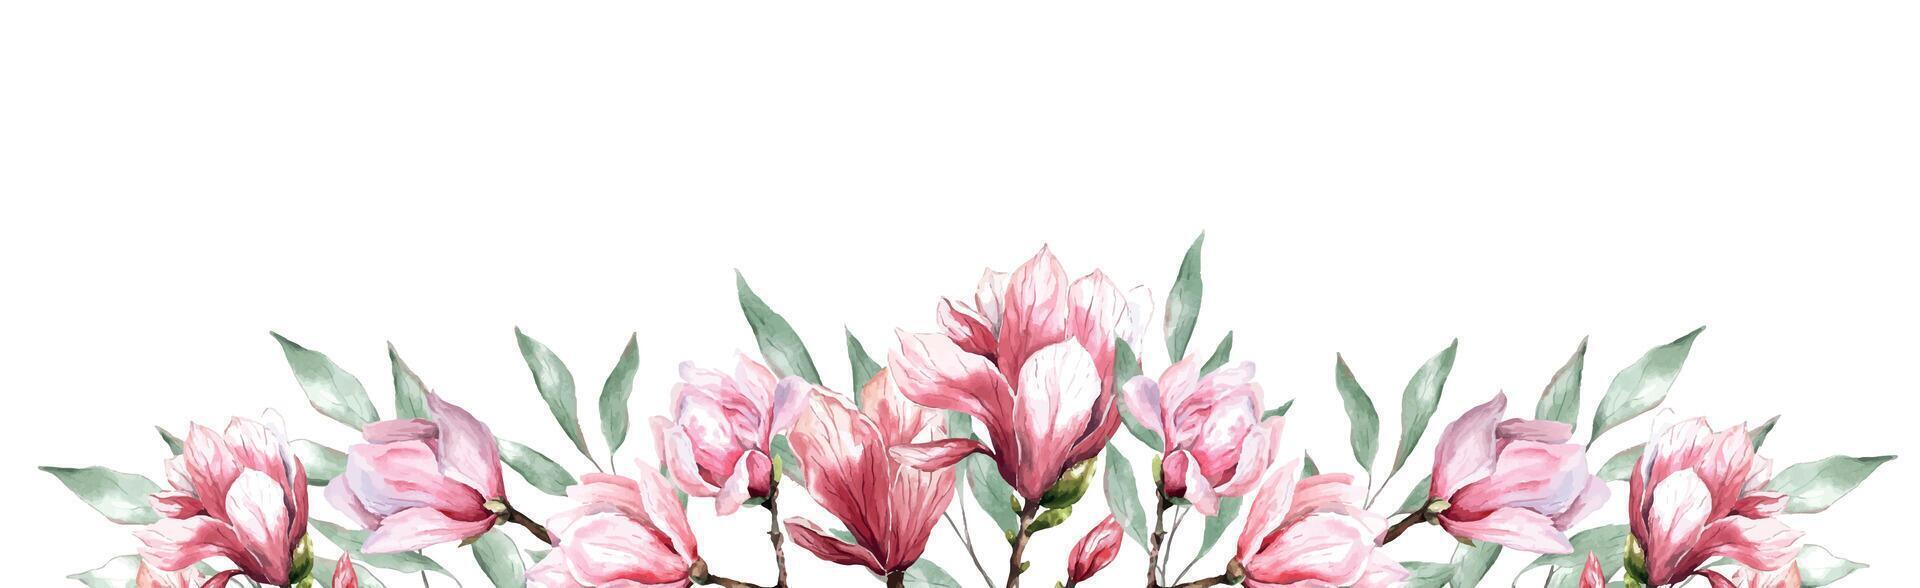 vers magnolia bloem botanisch waterverf illustratie bloemen ontwerp bloemblaadjes bloeiend voorjaar tropisch roze mooi fabriek grens achtergrond sjabloon vector